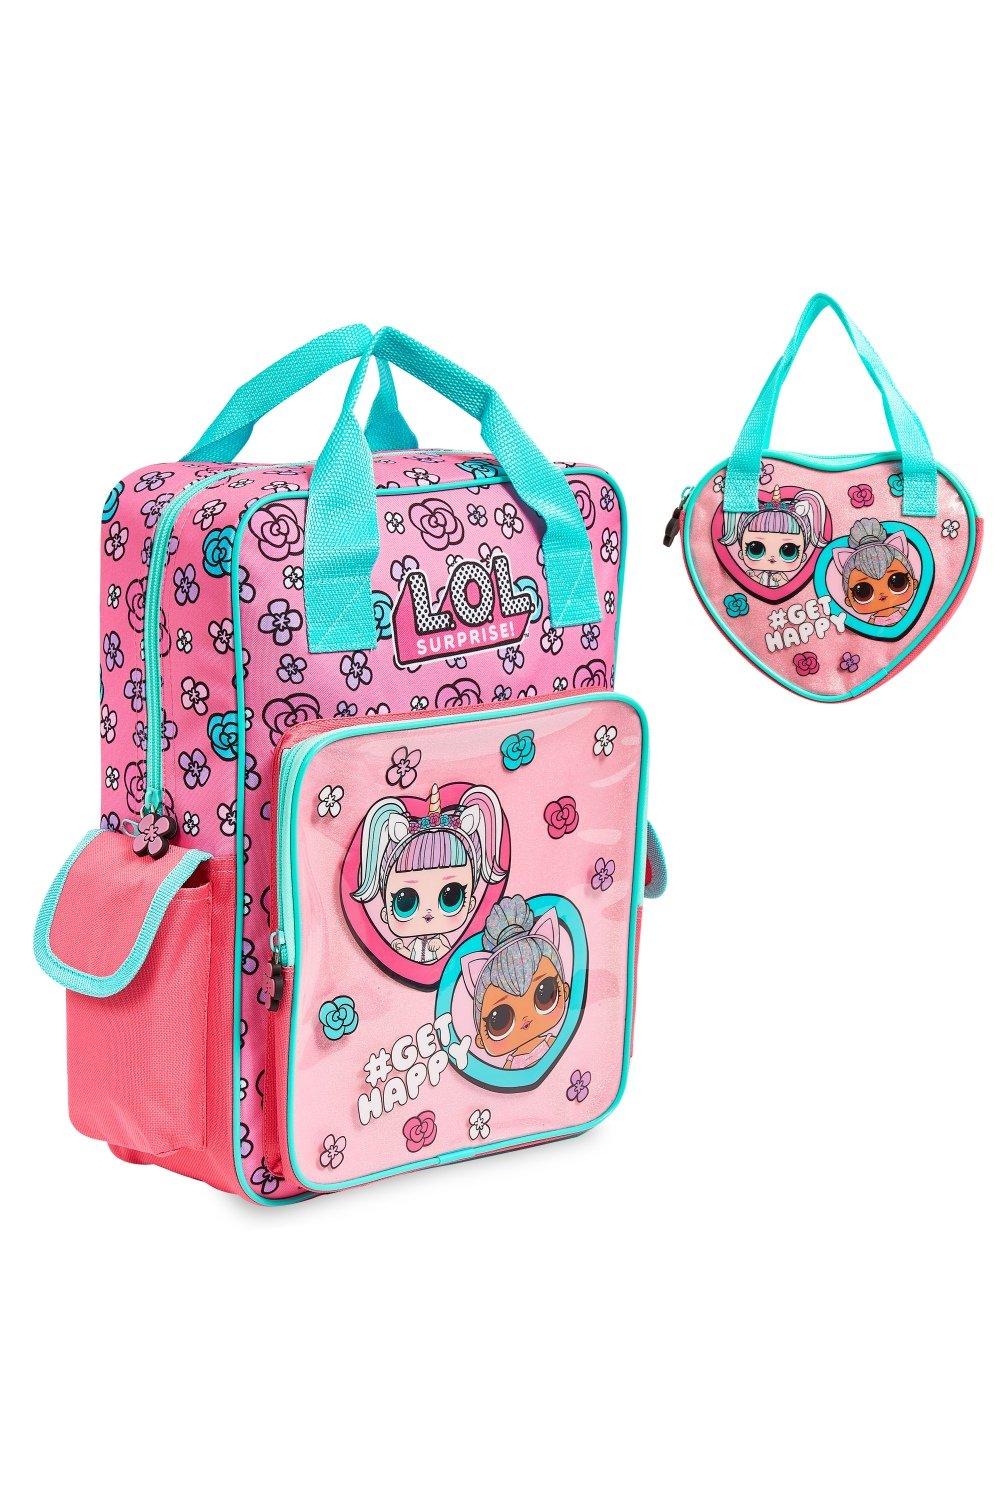 Сумочка и рюкзак Unicorn and Kitty Queen L.O.L. Surprise, розовый рюкзак pioneer pro dj для мальчиков и девочек школьные ранцы для подростков детский повседневный дорожный ранец